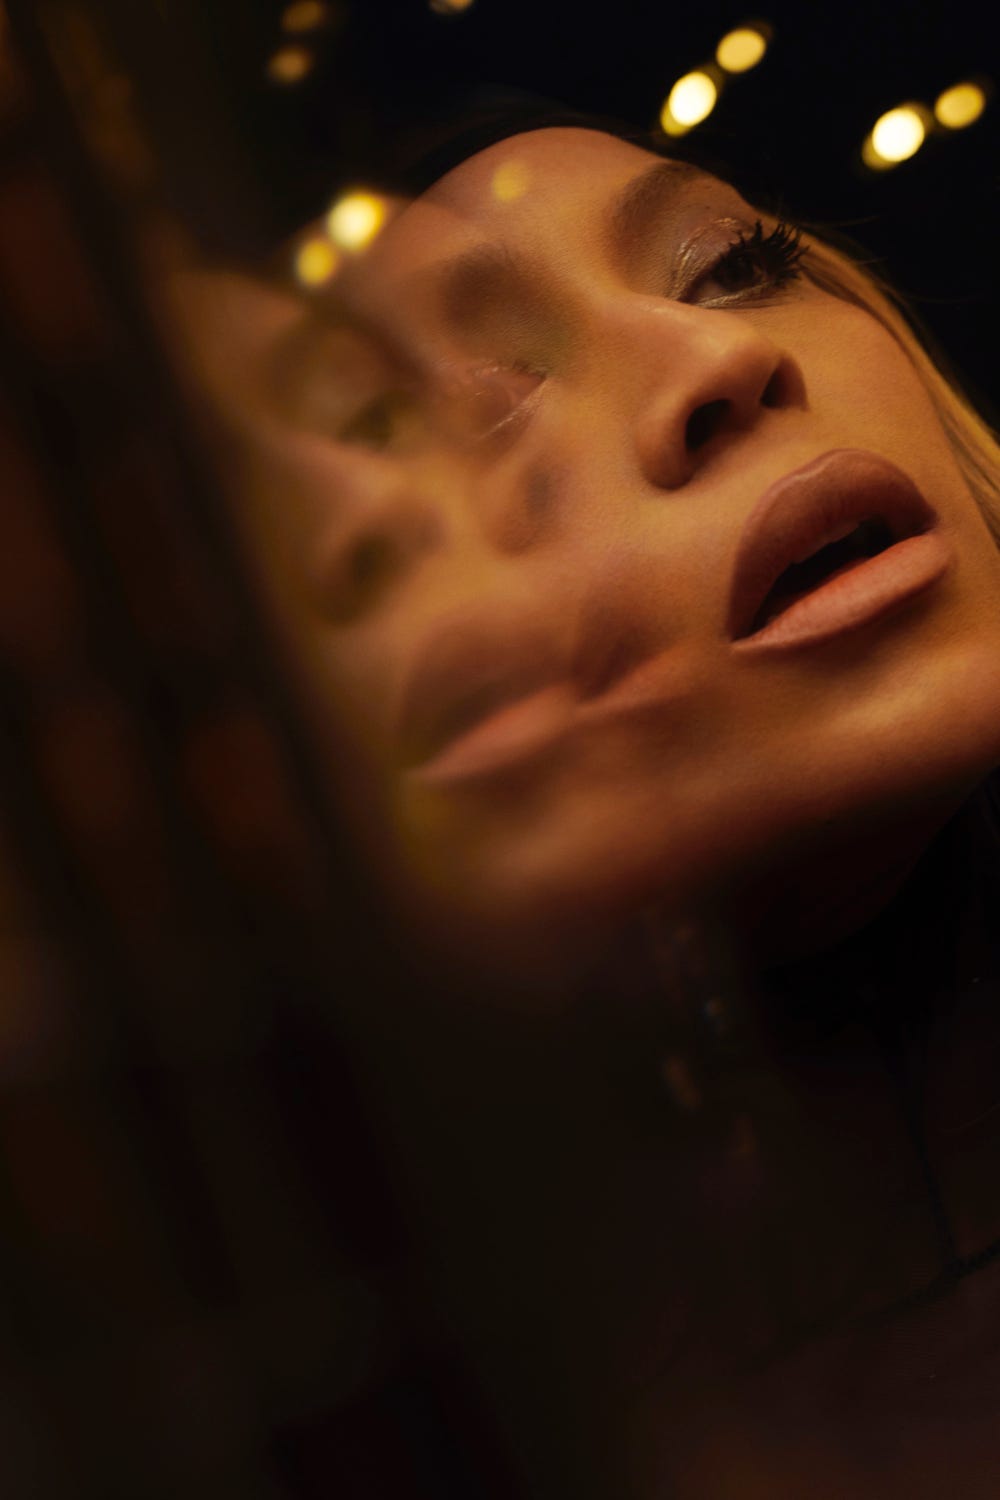 Beyoncé's 'Renaissance' Photo Released With New Album